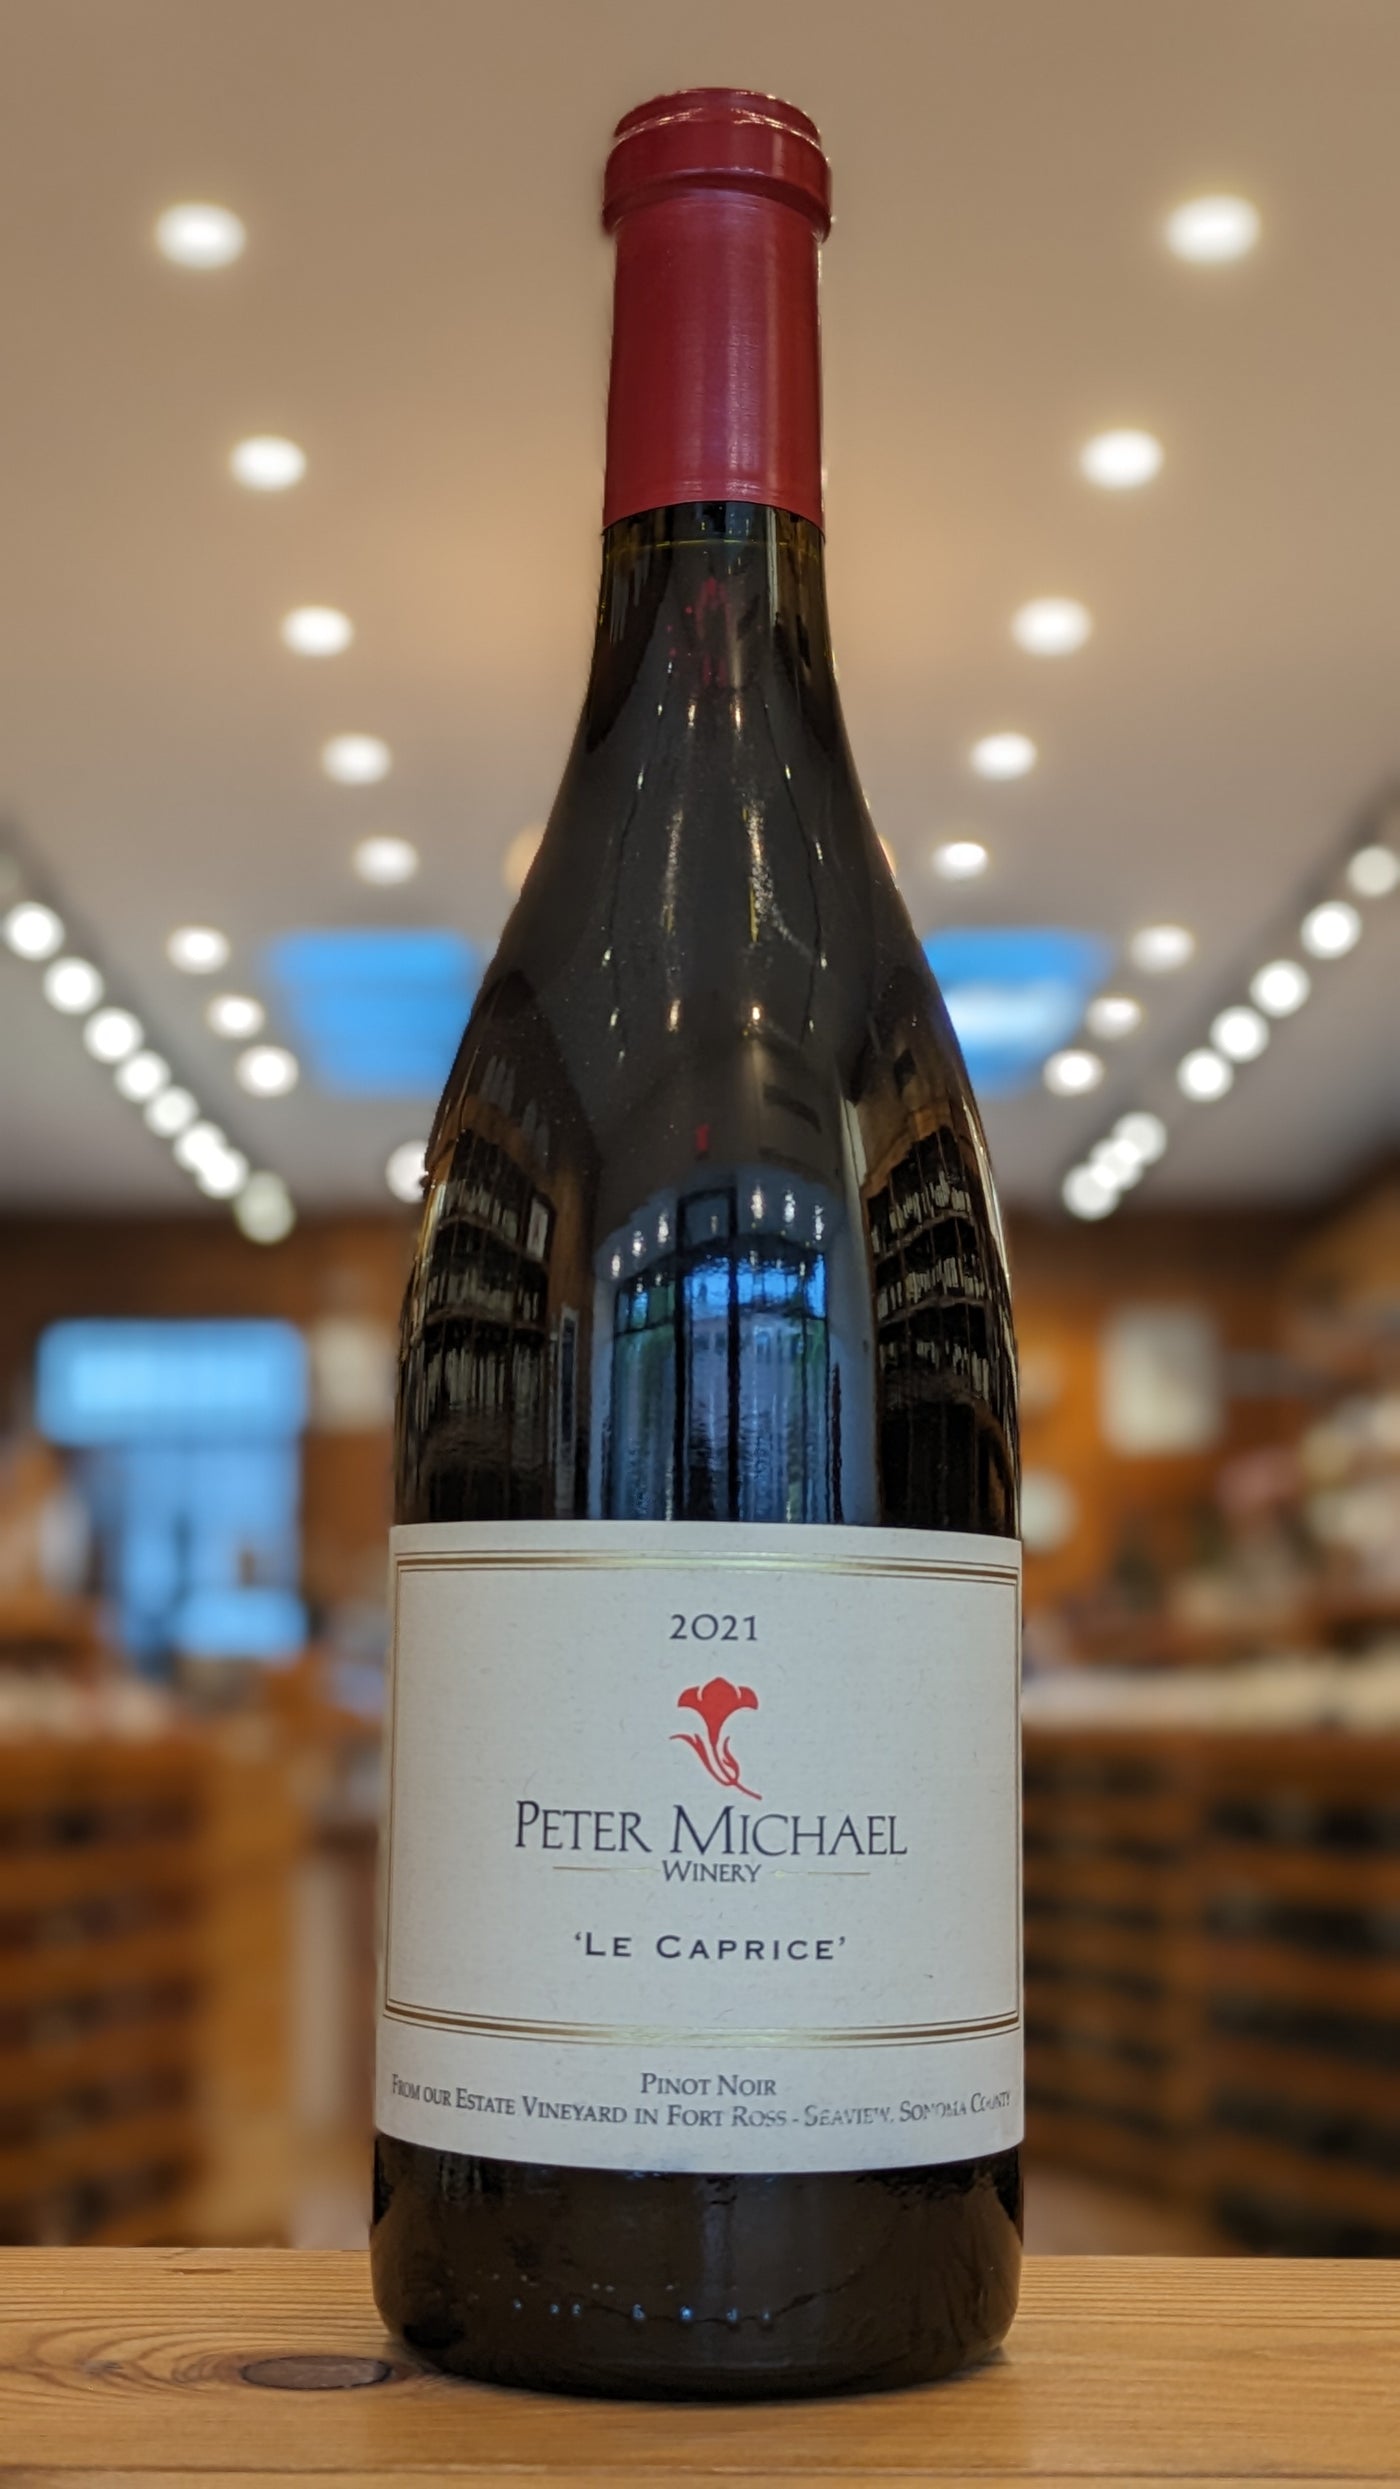 Peter Michael Le caprice Pinot Noir 2021